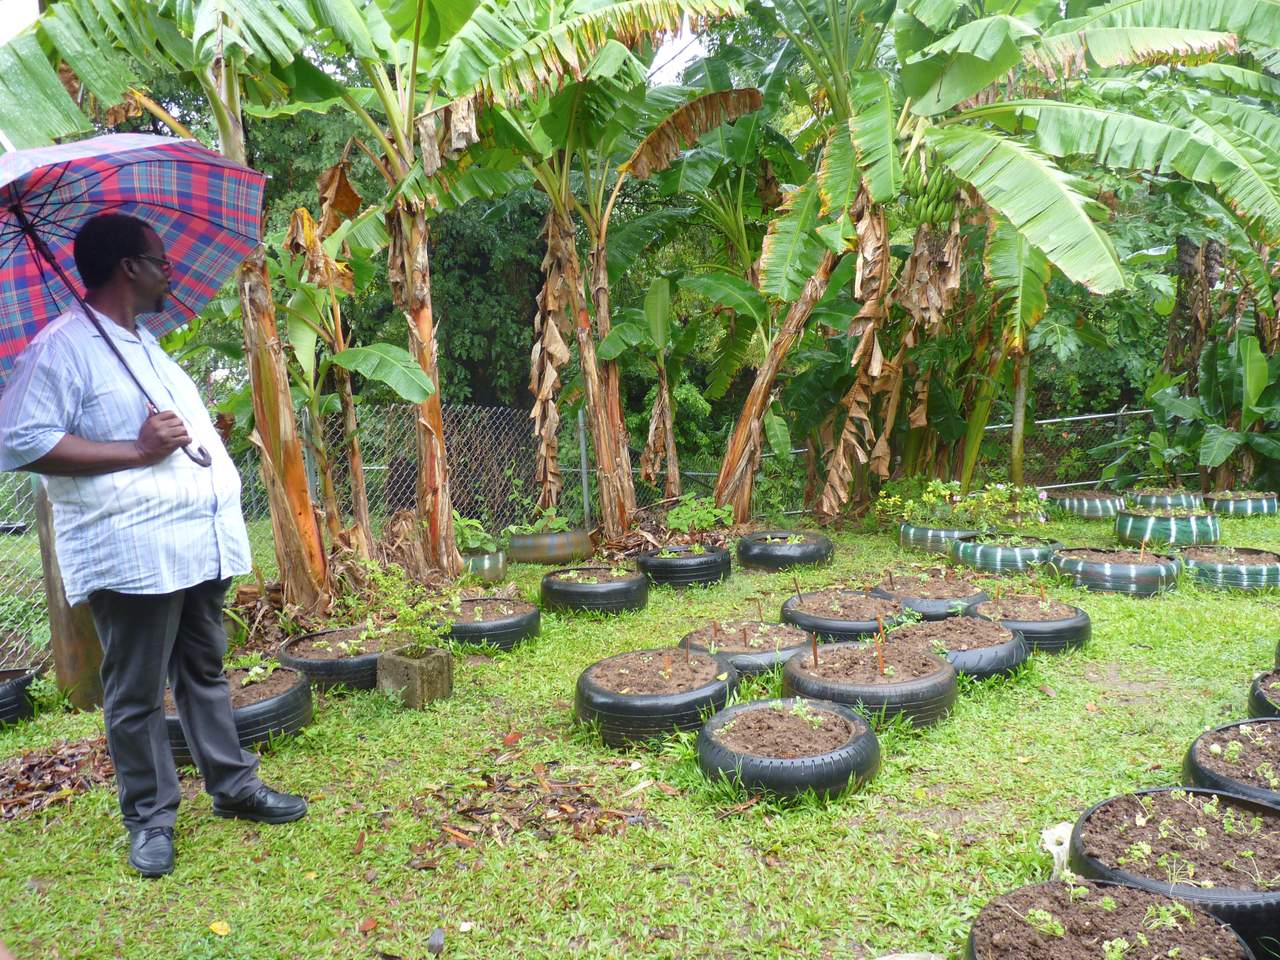 El Gobierno de México y la Organización de la ONU para la Alimentación y la Agricultura (FAO) suscribieron hoy en Jamaica un acuerdo para ayudar a los países caribeños a hacer su agricultura más resiliente al cambio climático. (ARCHIVO)